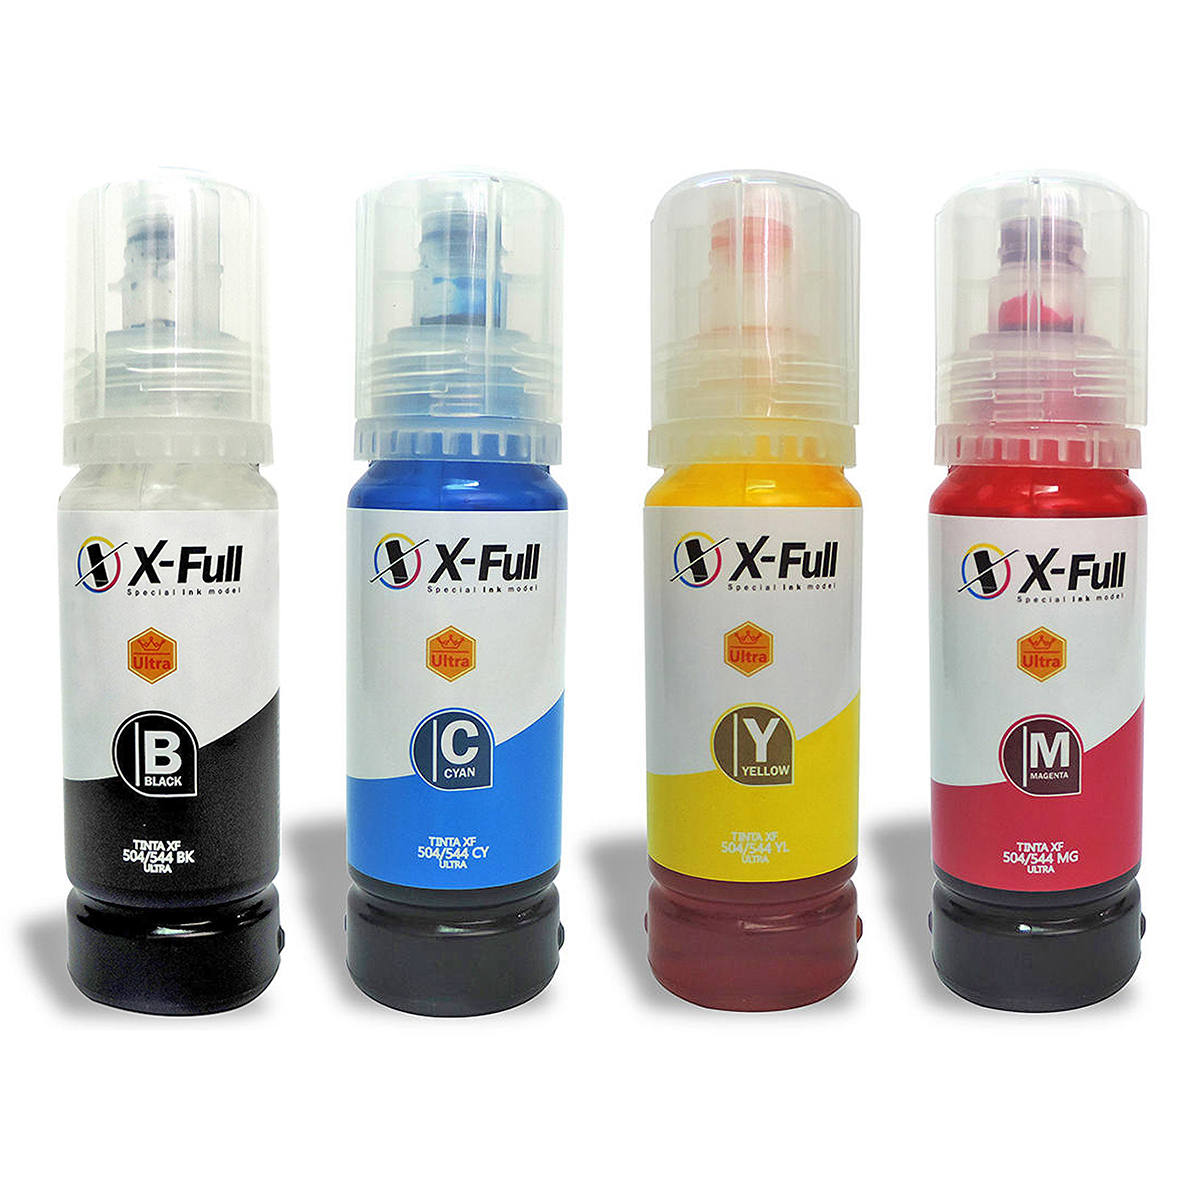 Compatível: Kit Colorido 4 Cores de Tinta Corante X-Full Ultra para uso em Impressoras Epson Série L504/544 Refil 4x70ml